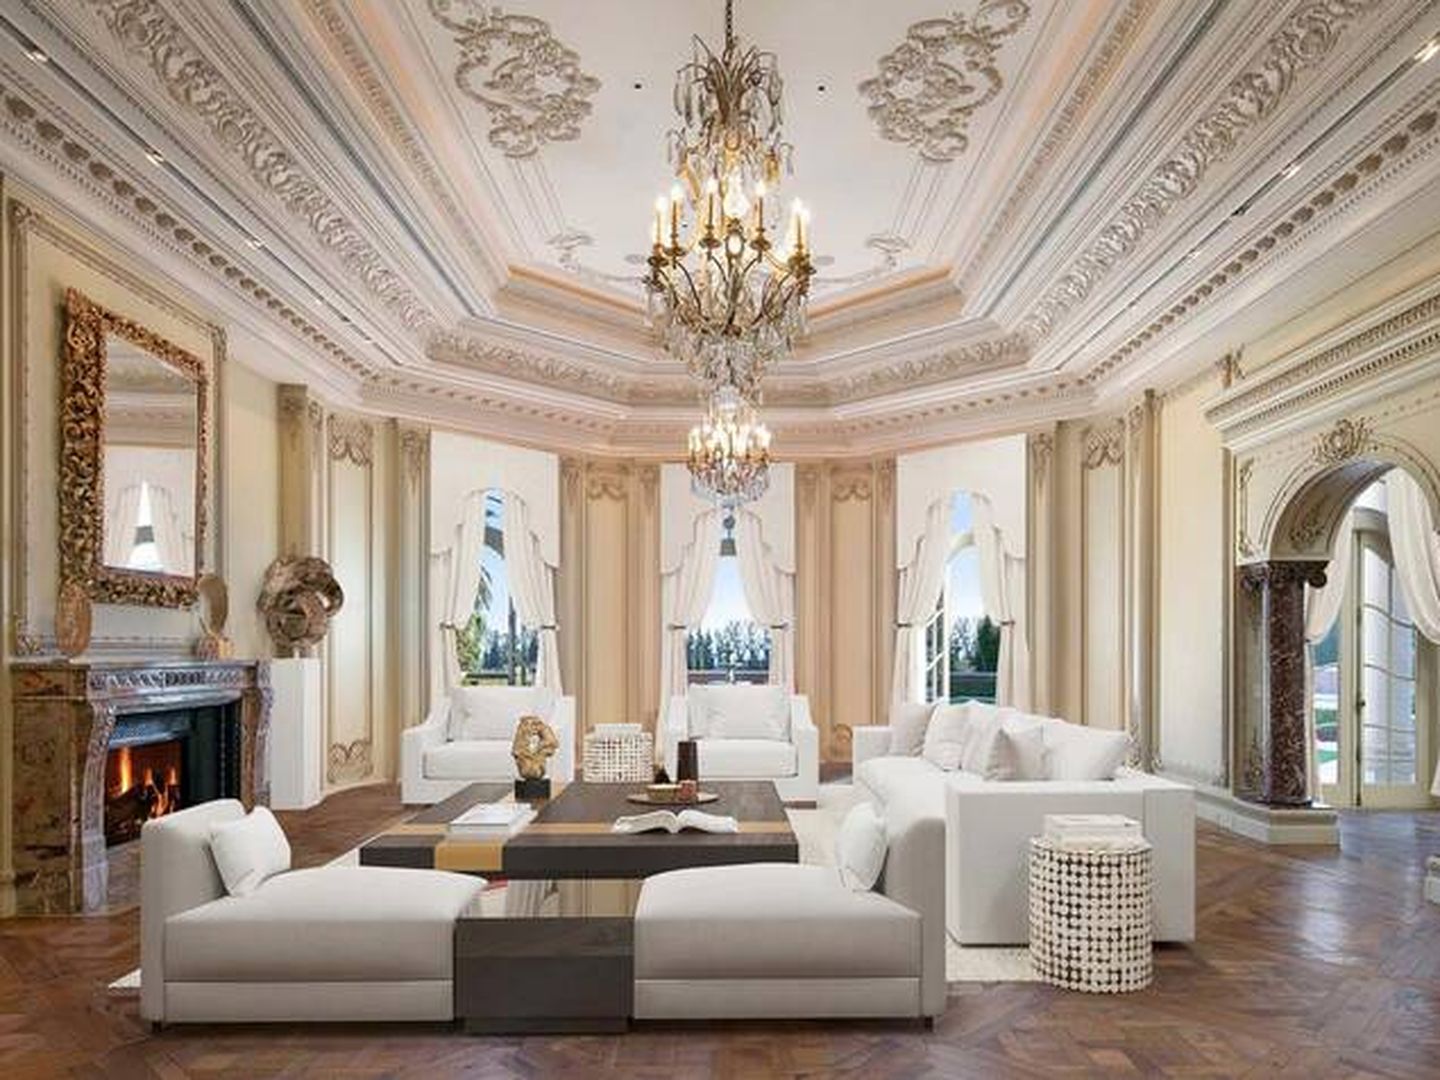 Uno de los lujosos salones. (Berkshire Hathaway Luxury Collection)